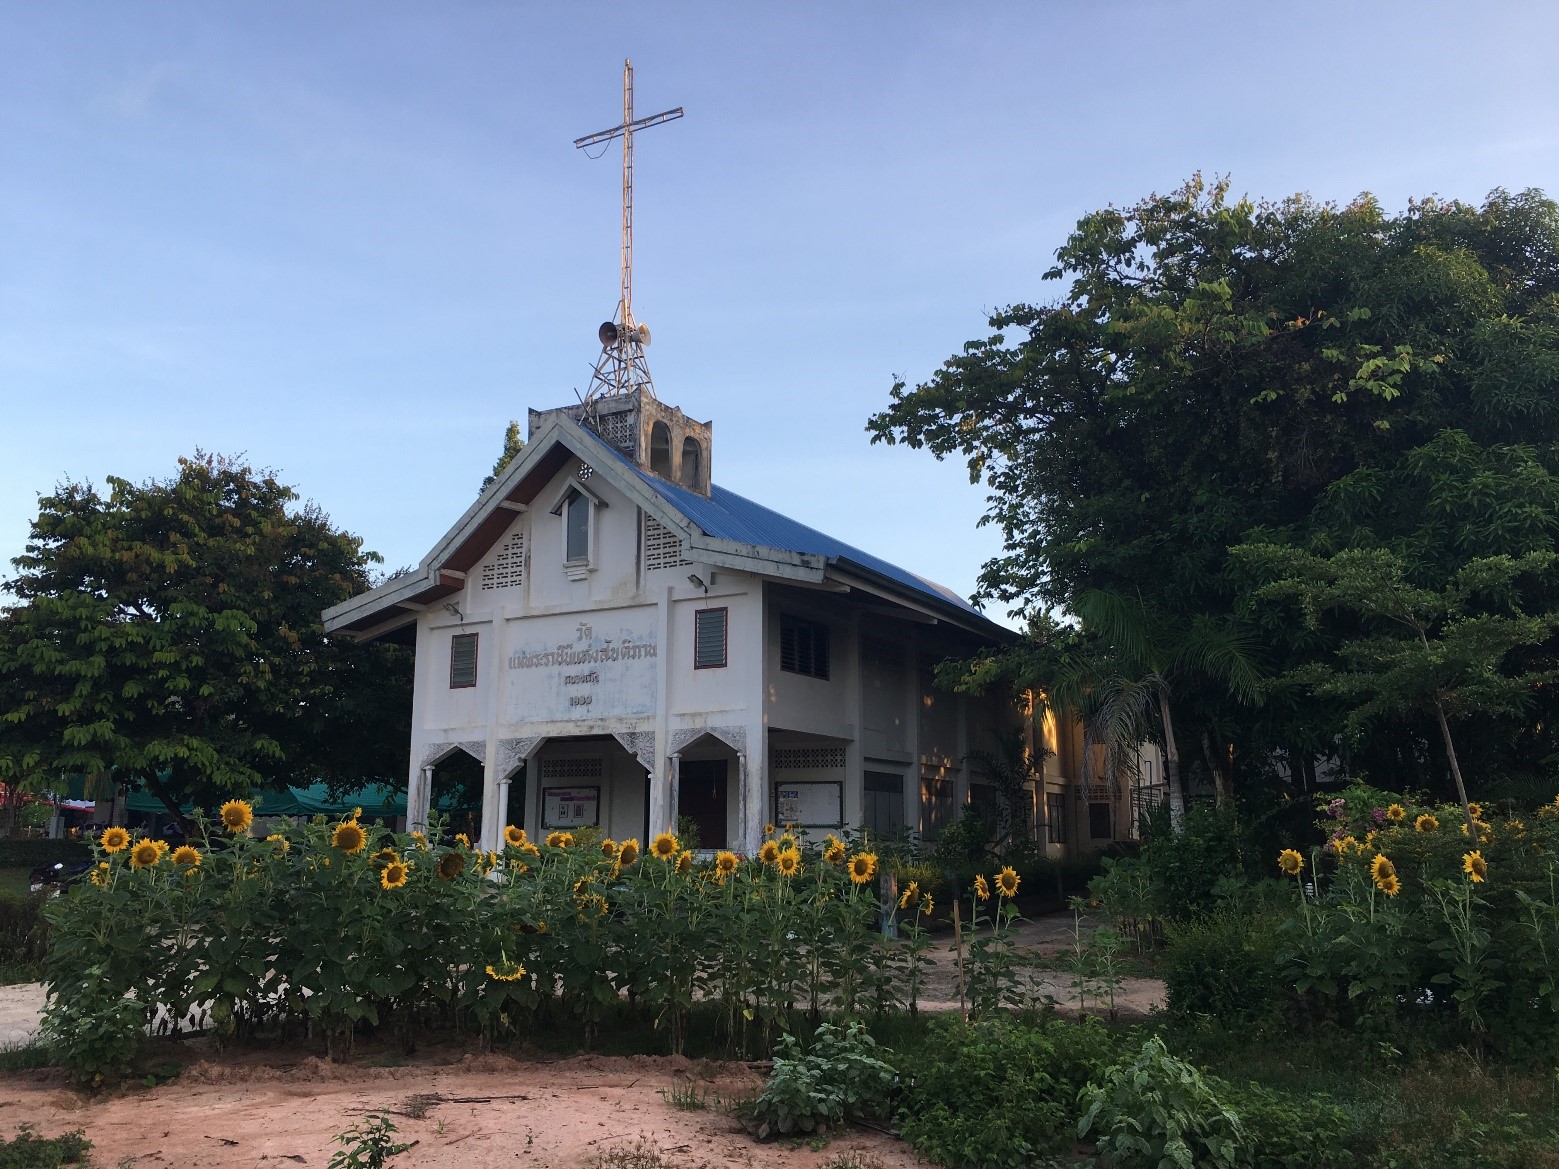 Đôi nét về giáo xứ Đức Mẹ Hòa bình - Thái Lan